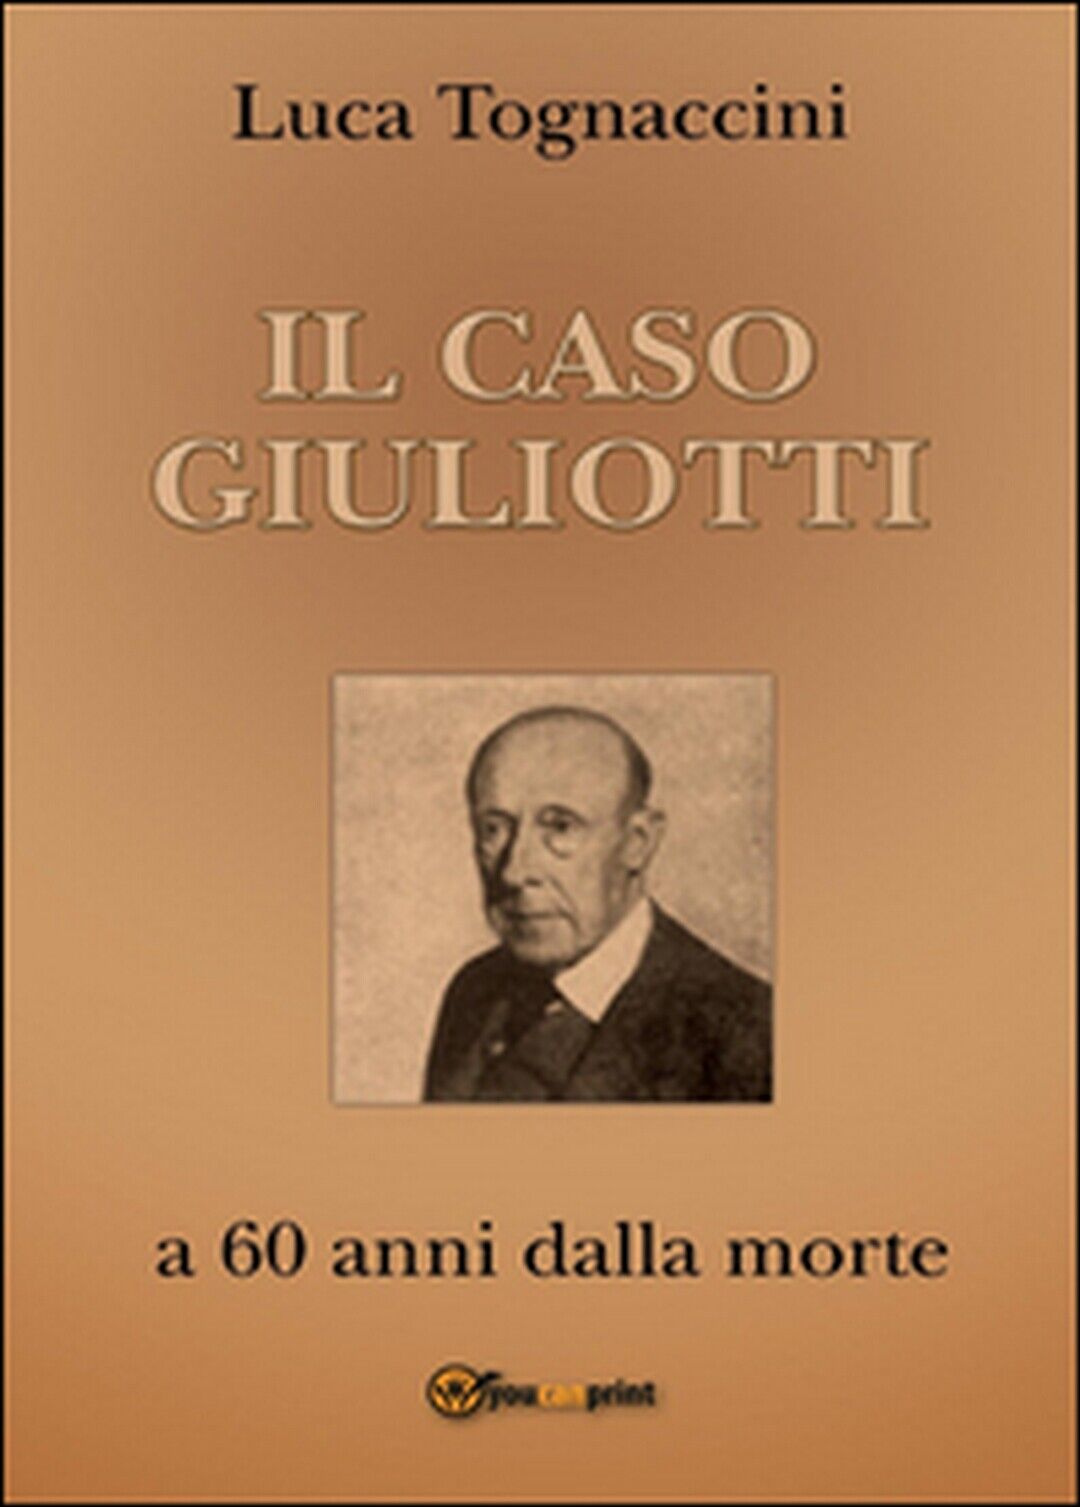 Il Caso Giuliotti (a 60 anni dalla morte), Luca Tognaccini,  2016,  Youcanprint